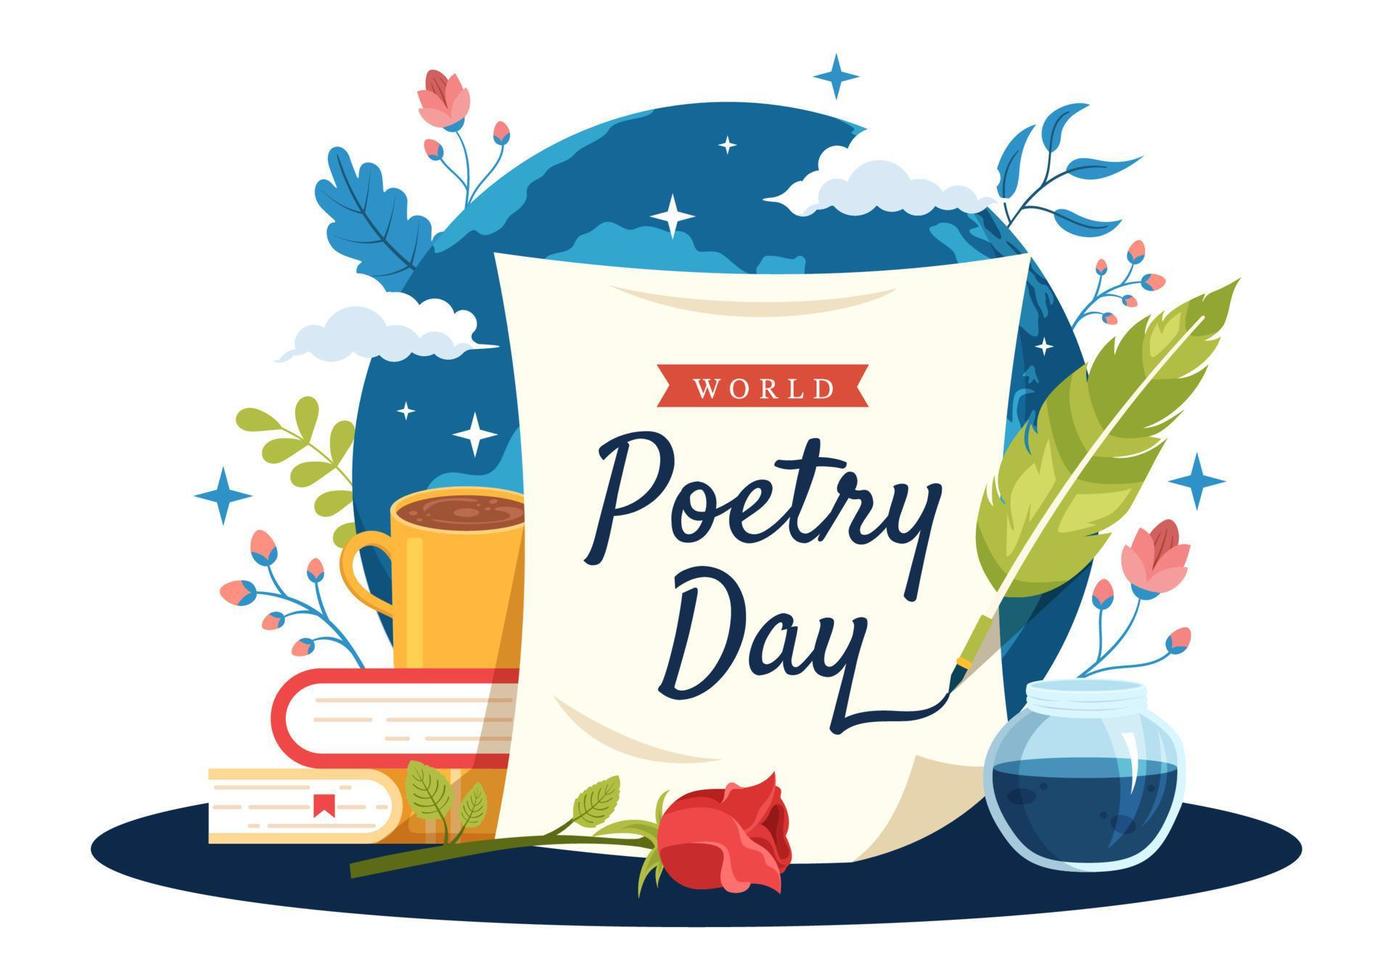 dia mundial da poesia em 21 de março ilustração com uma pena, papel ou máquina de escrever para banner da web ou página inicial em modelos desenhados à mão de desenhos animados planos vetor